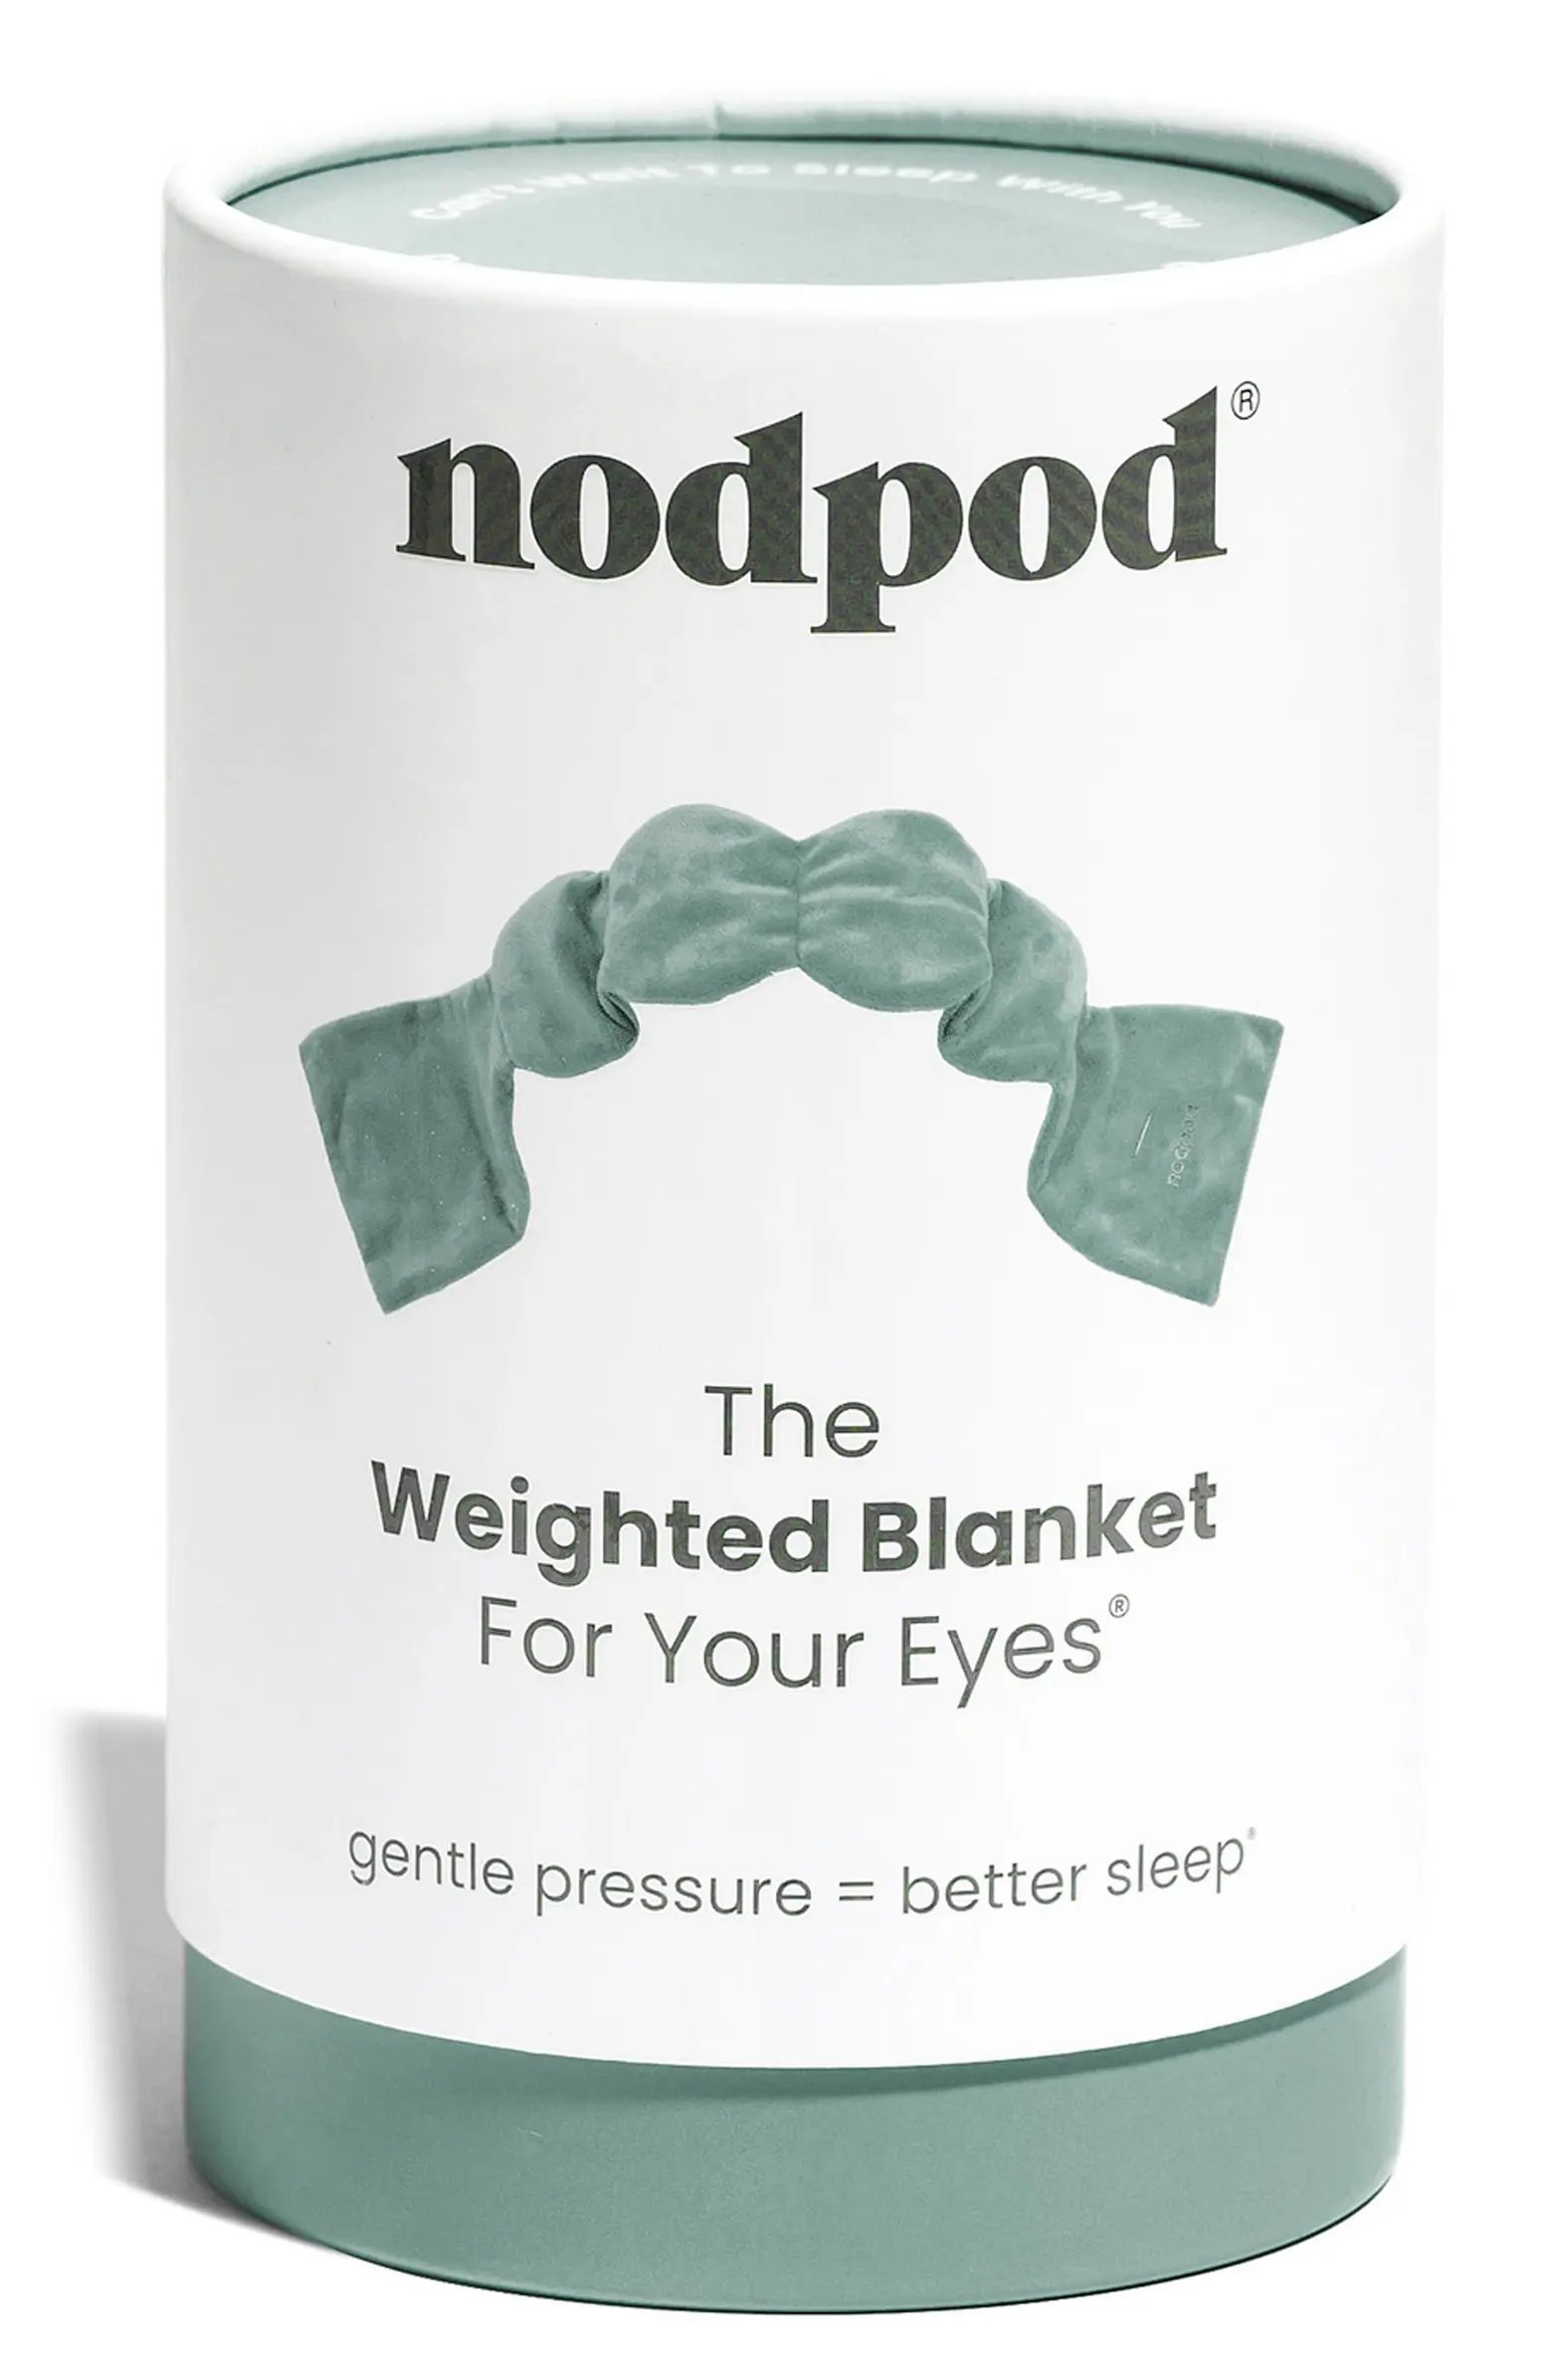 NODPOD Nod Pod Sleep Mask | Nordstrom | Nordstrom